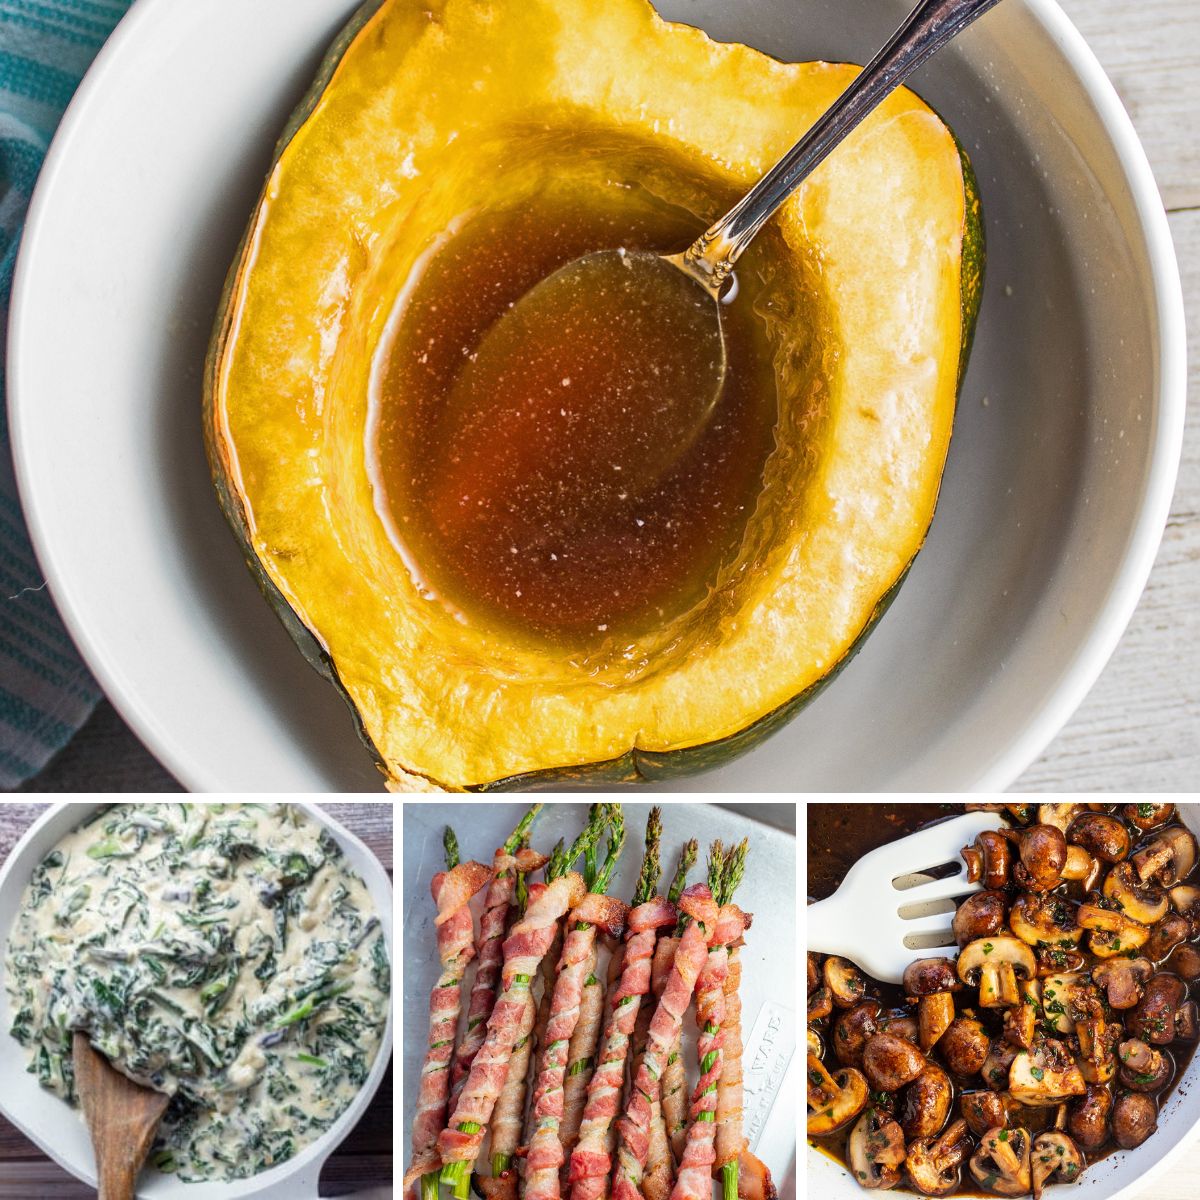 Lauk Thanksgiving Menit Terakhir Terbaik untuk ide resep dengan 4 gambar yang ditampilkan dalam kolase.